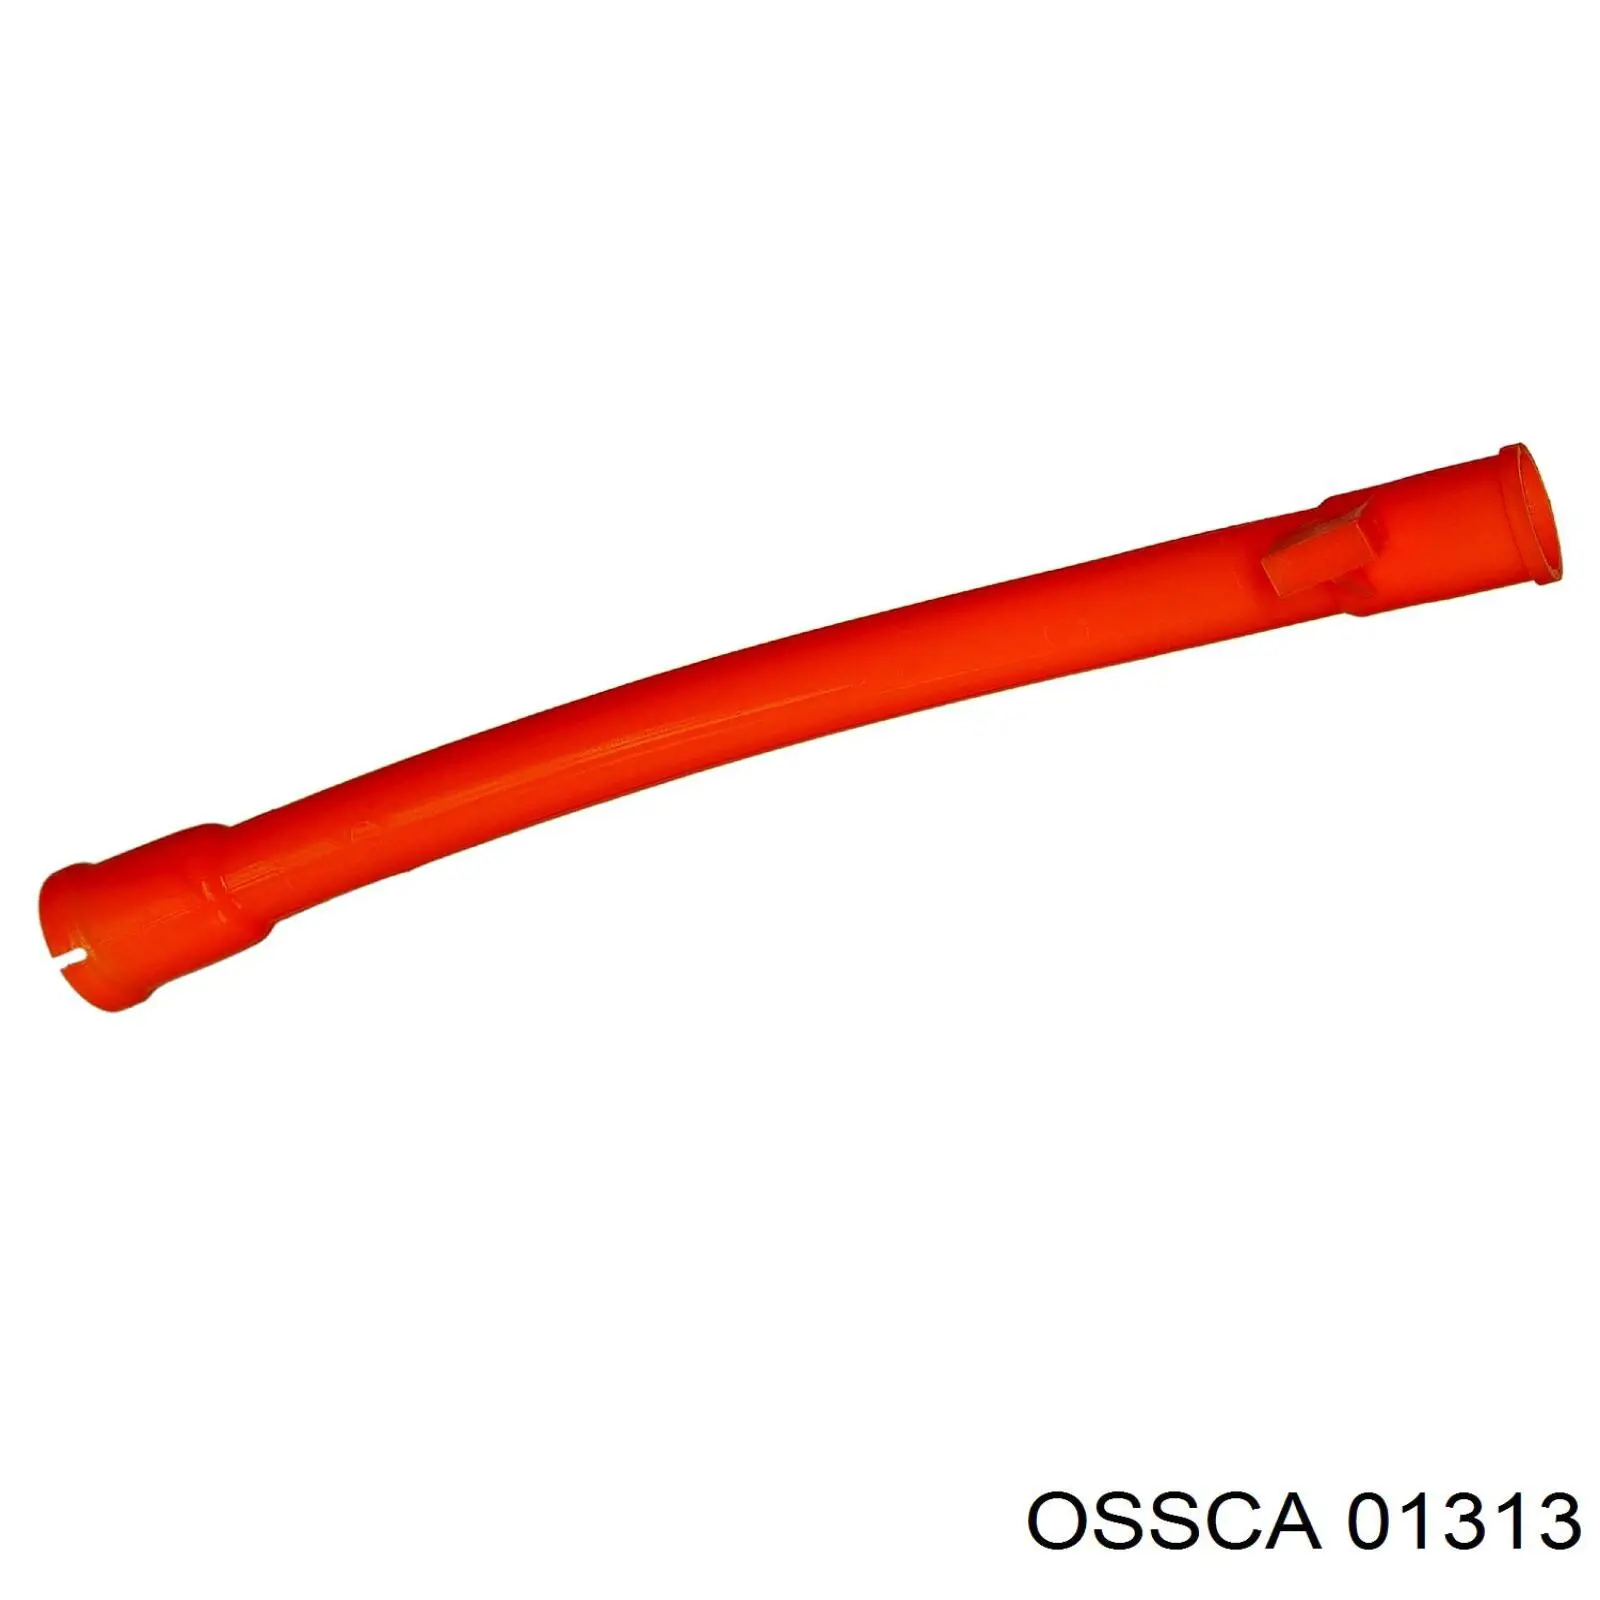 01313 Ossca направляющая щупа-индикатора уровня масла в двигателе